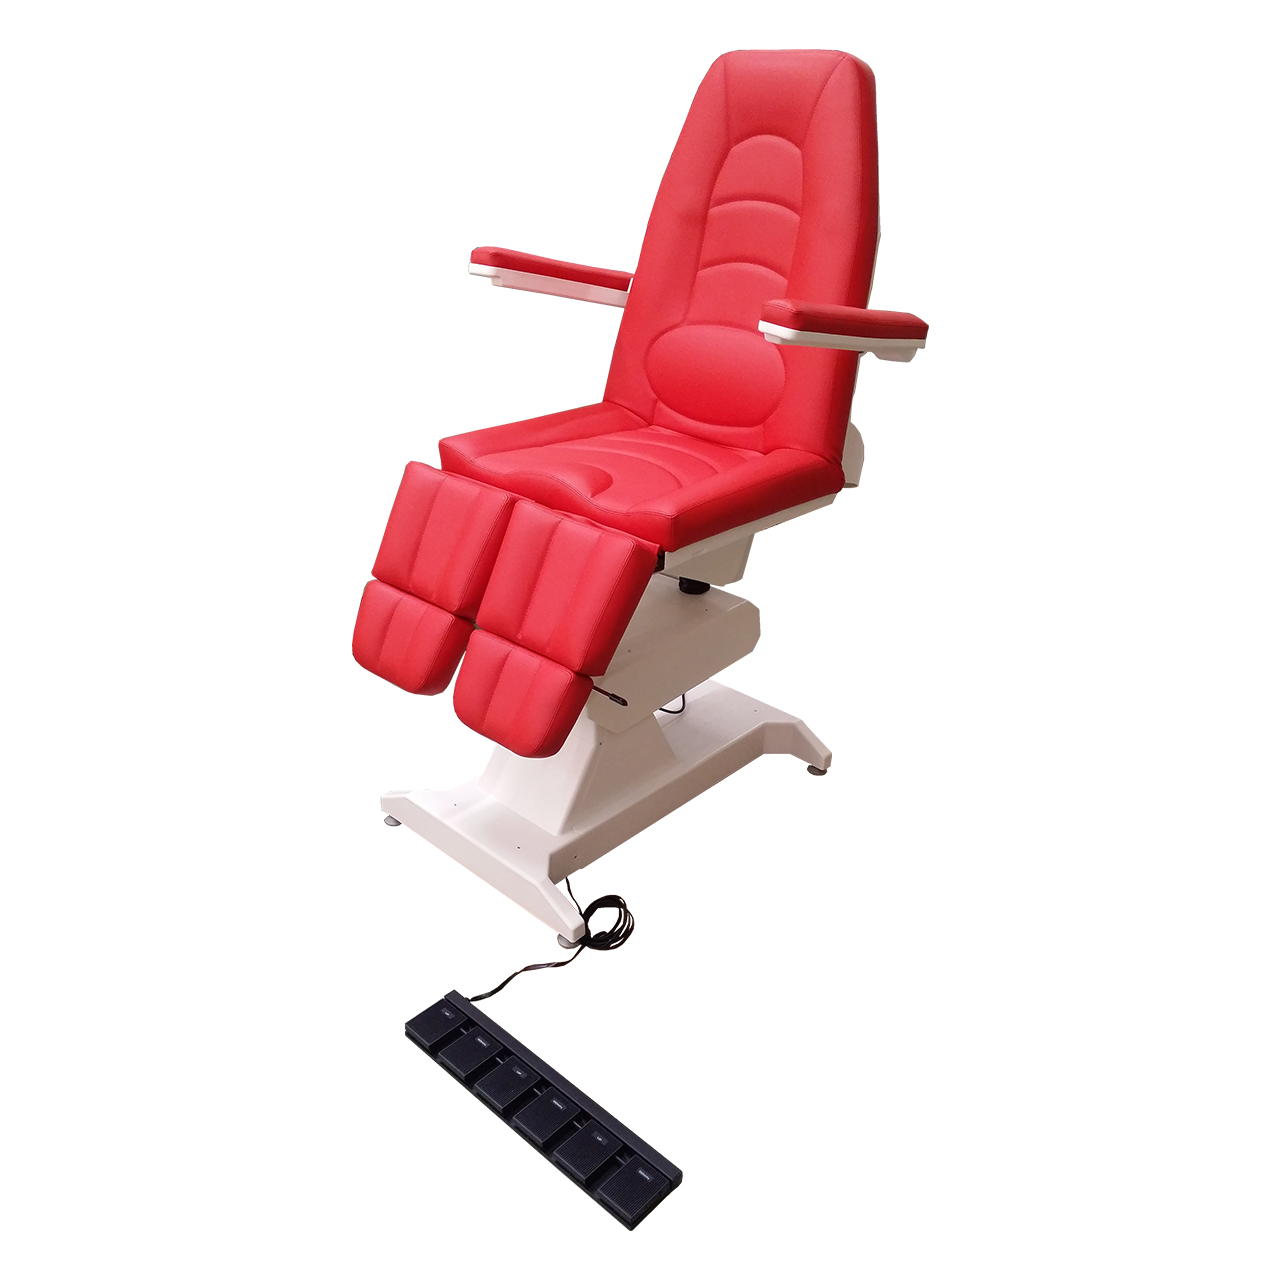 Кресло процедурное с электроприводом ФП-3, с газлифтами на подножках, с ножной педалью управления.